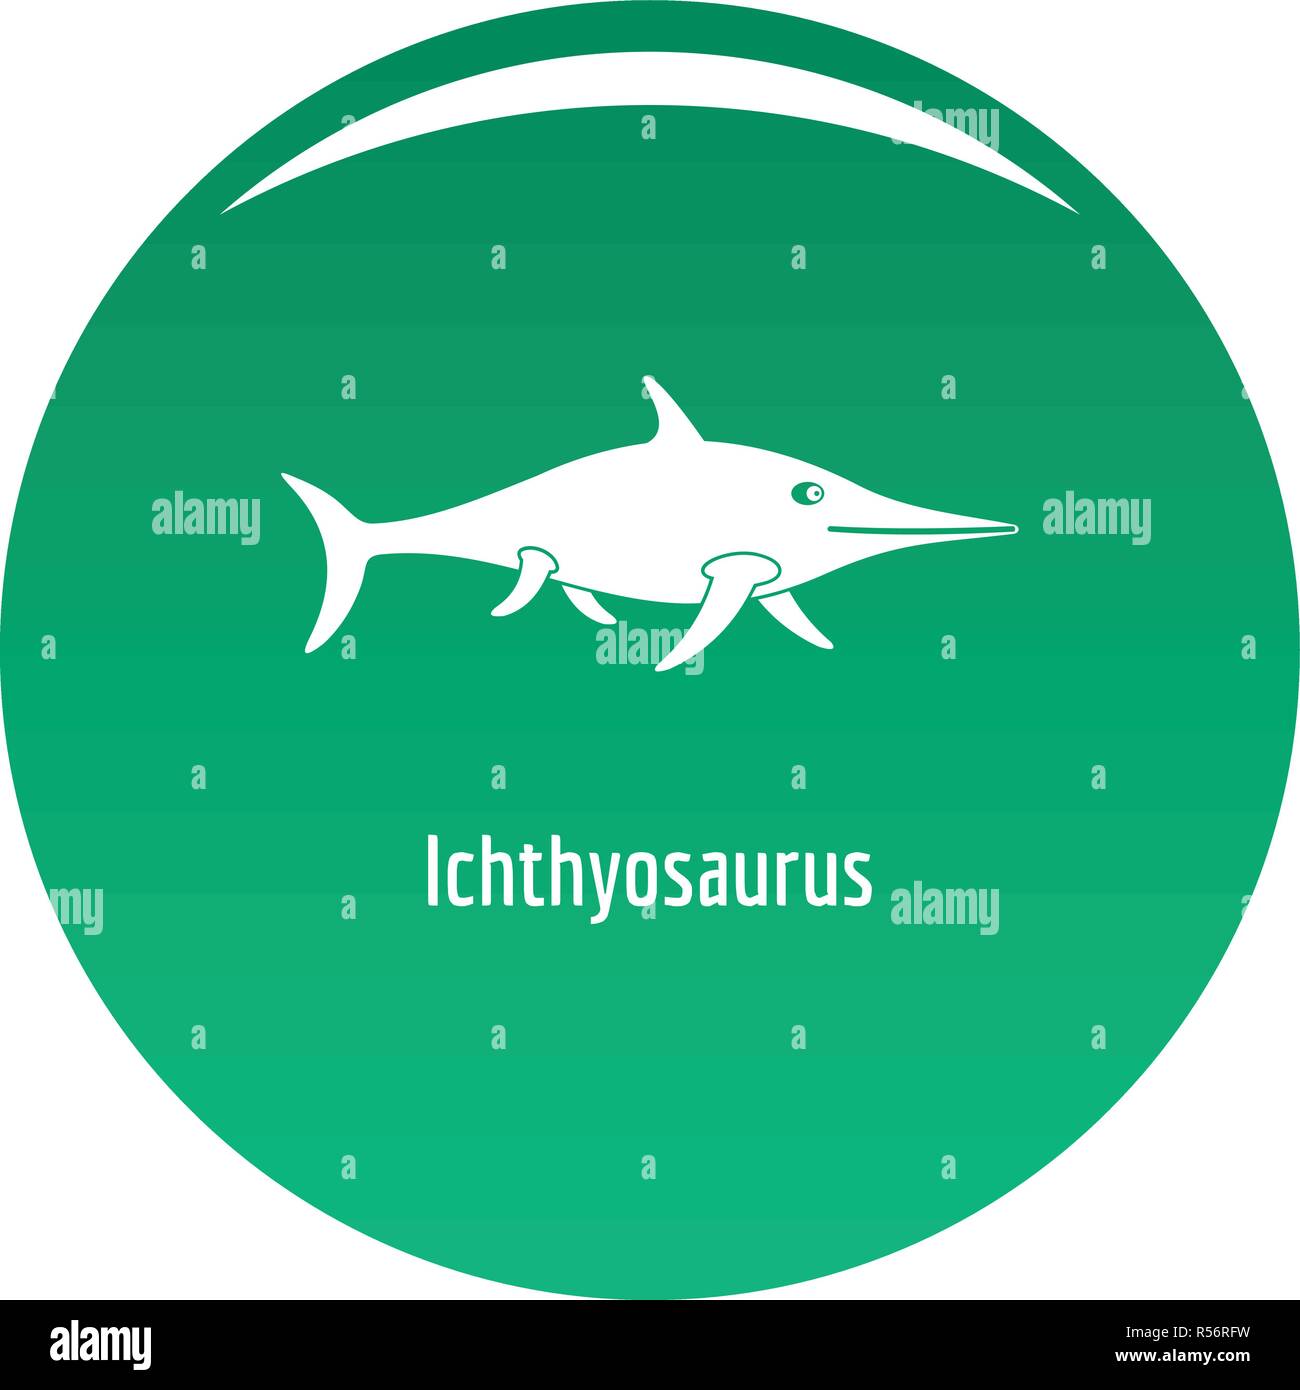 Ichthyosaurus Symbol. Einfache Abbildung von ichthyosaurus Vektor Icon für das Design grün Stock Vektor